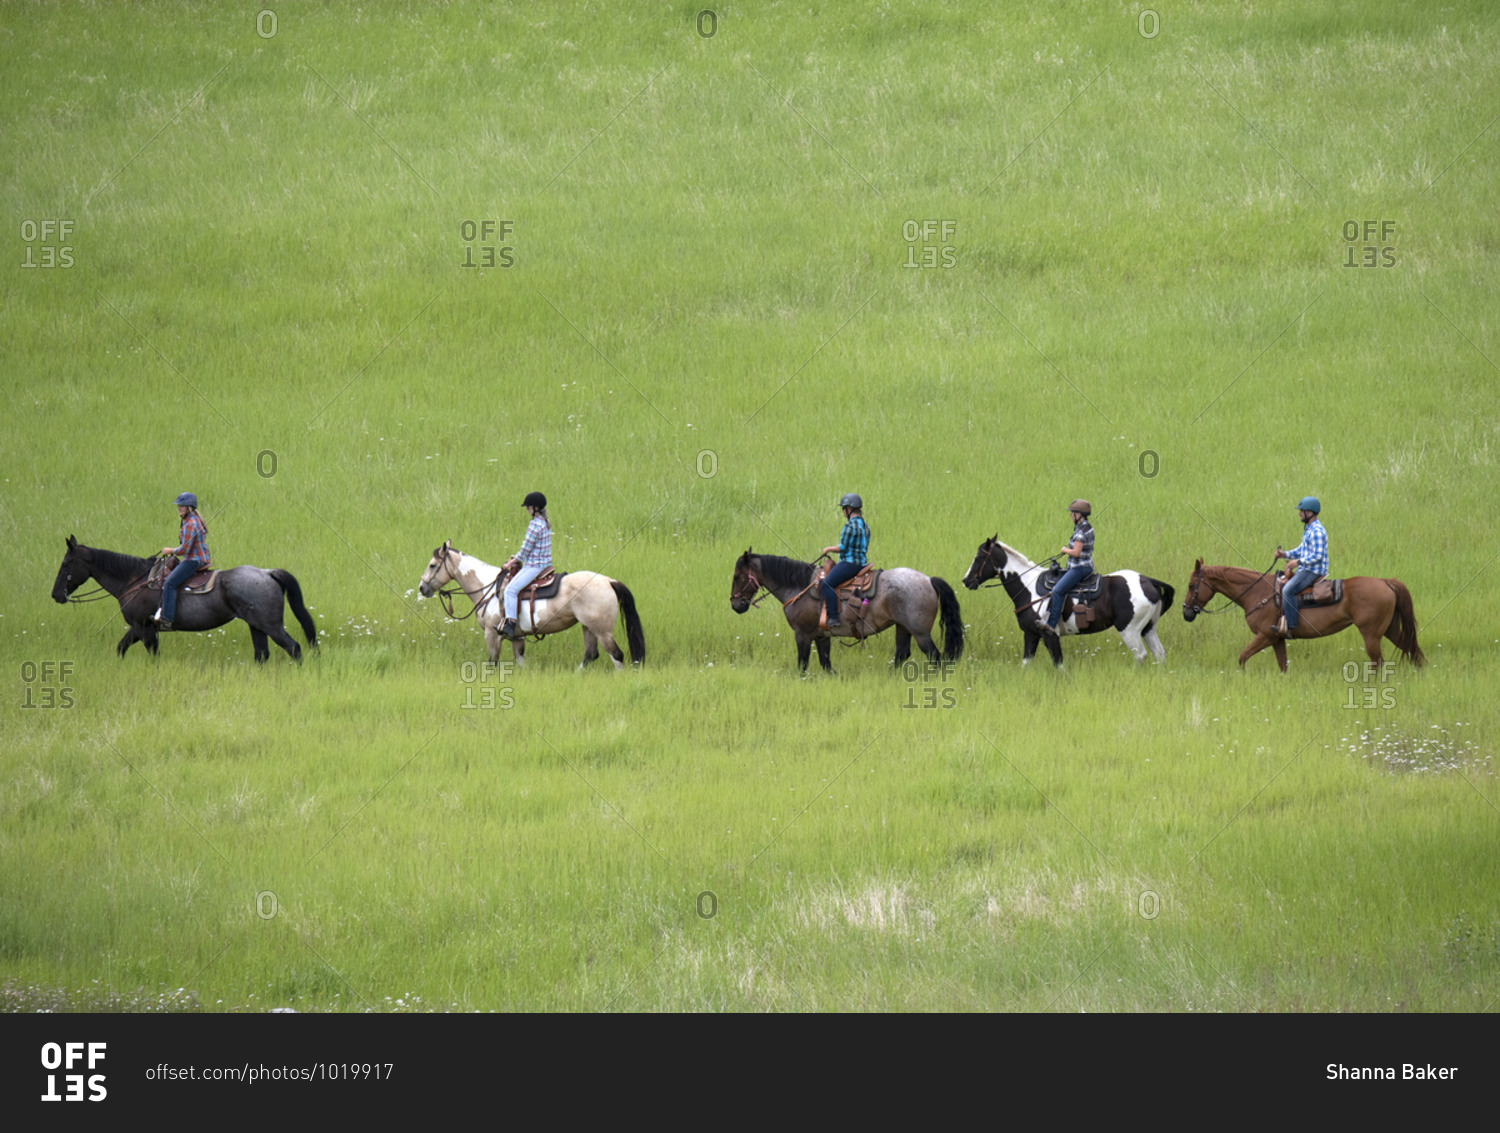 Trail riders on horses in a green field, Merritt, BC